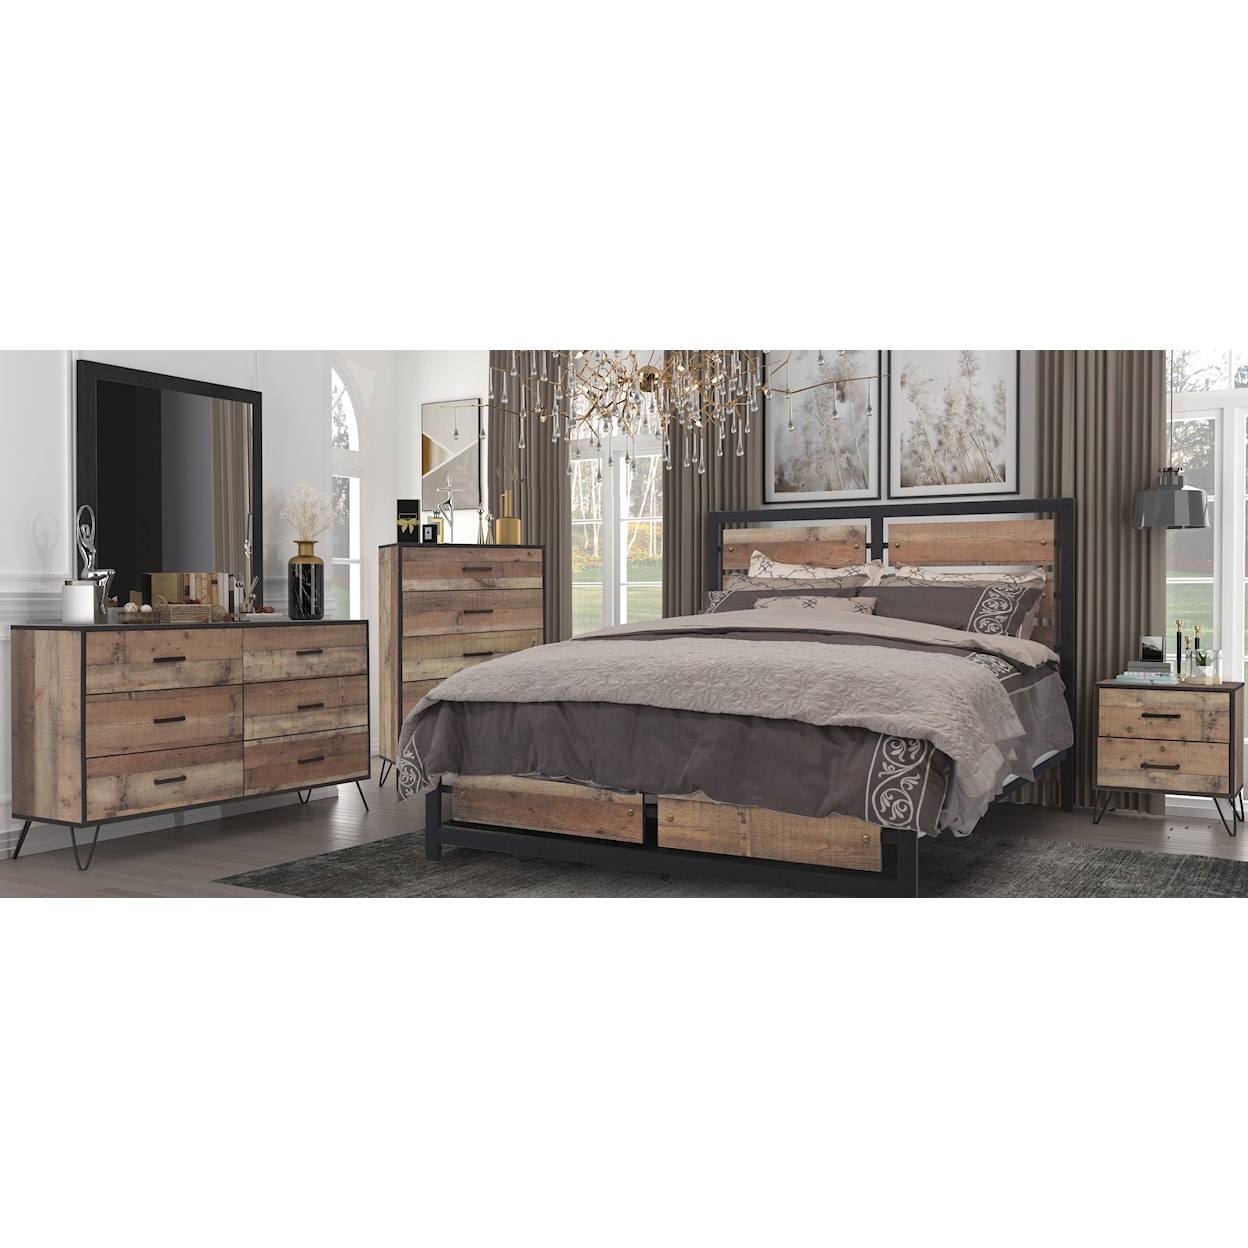 New Classic Elk River Queen Bedroom Set